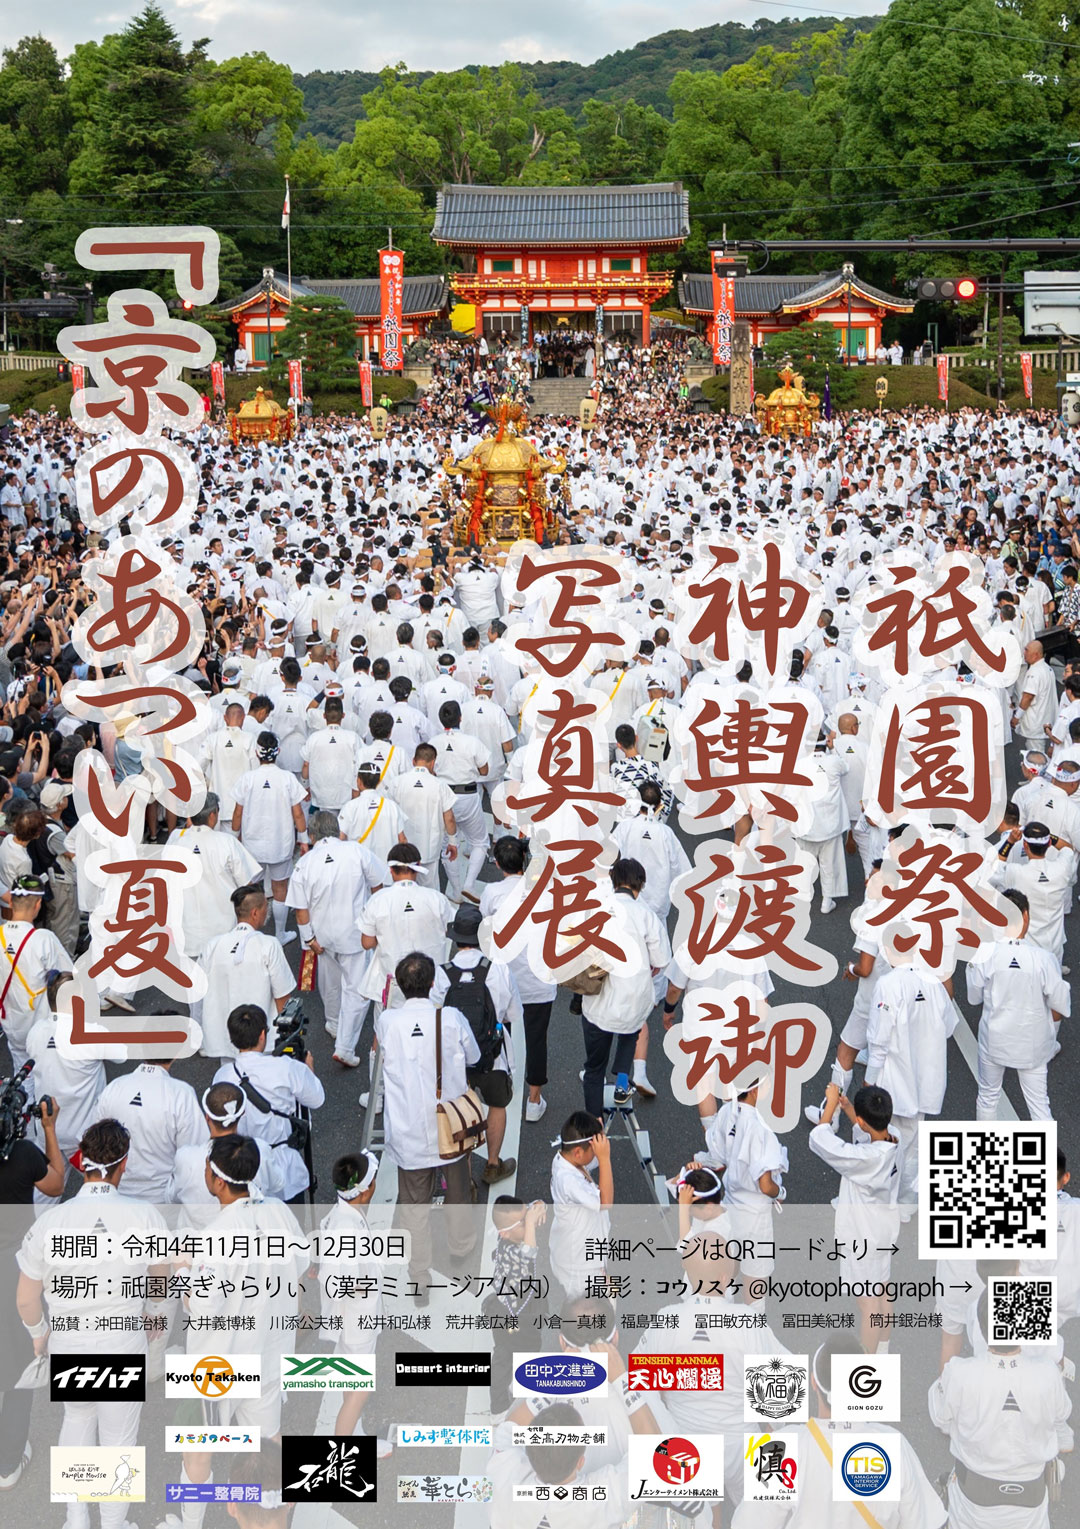 祇園祭神輿渡御写真展・テーマ『京のあつい夏』